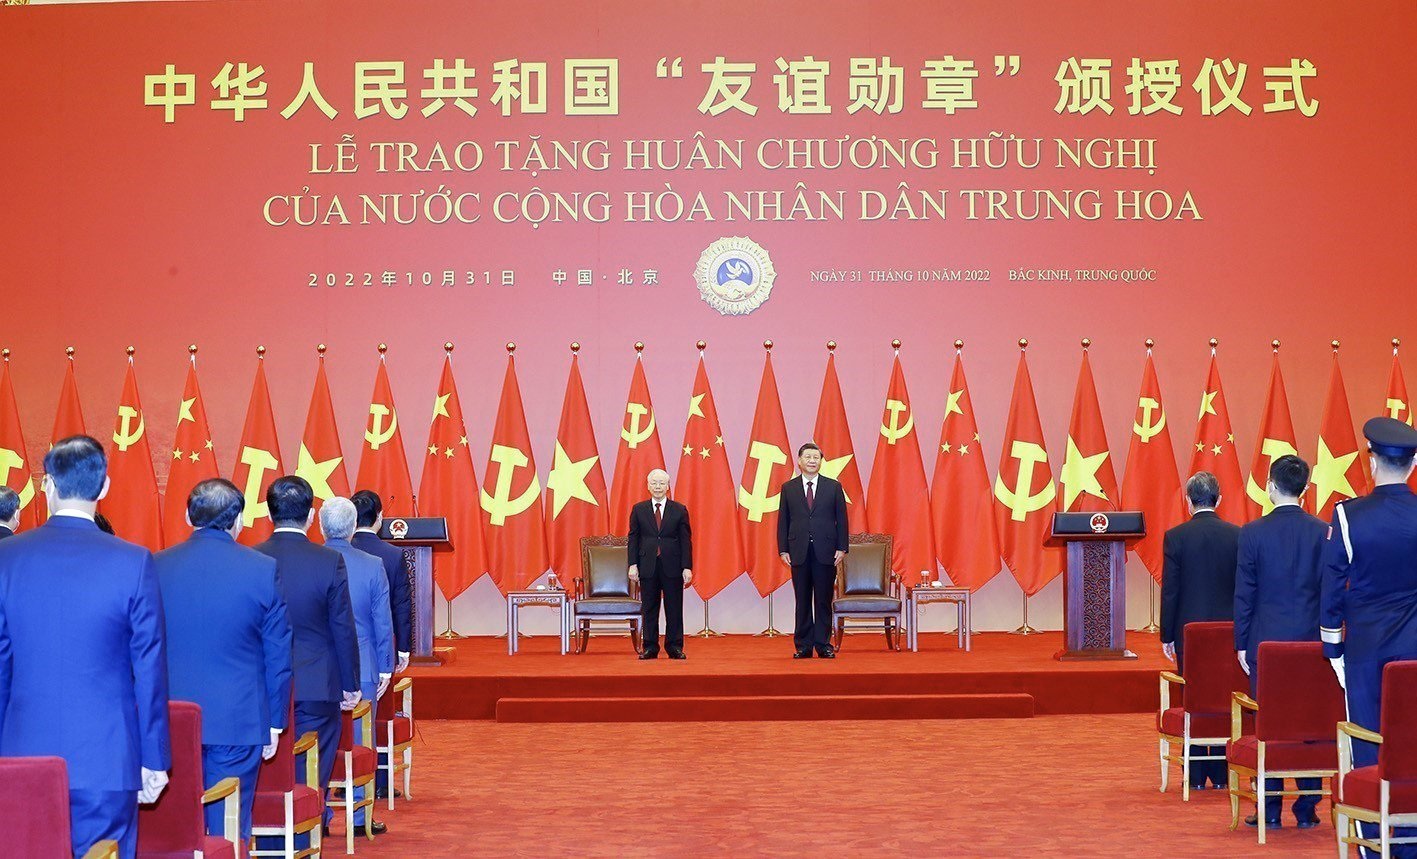 Toàn cảnh chuyến thăm chính thức Trung Quốc của Tổng Bí thư Nguyễn Phú Trọng - 4